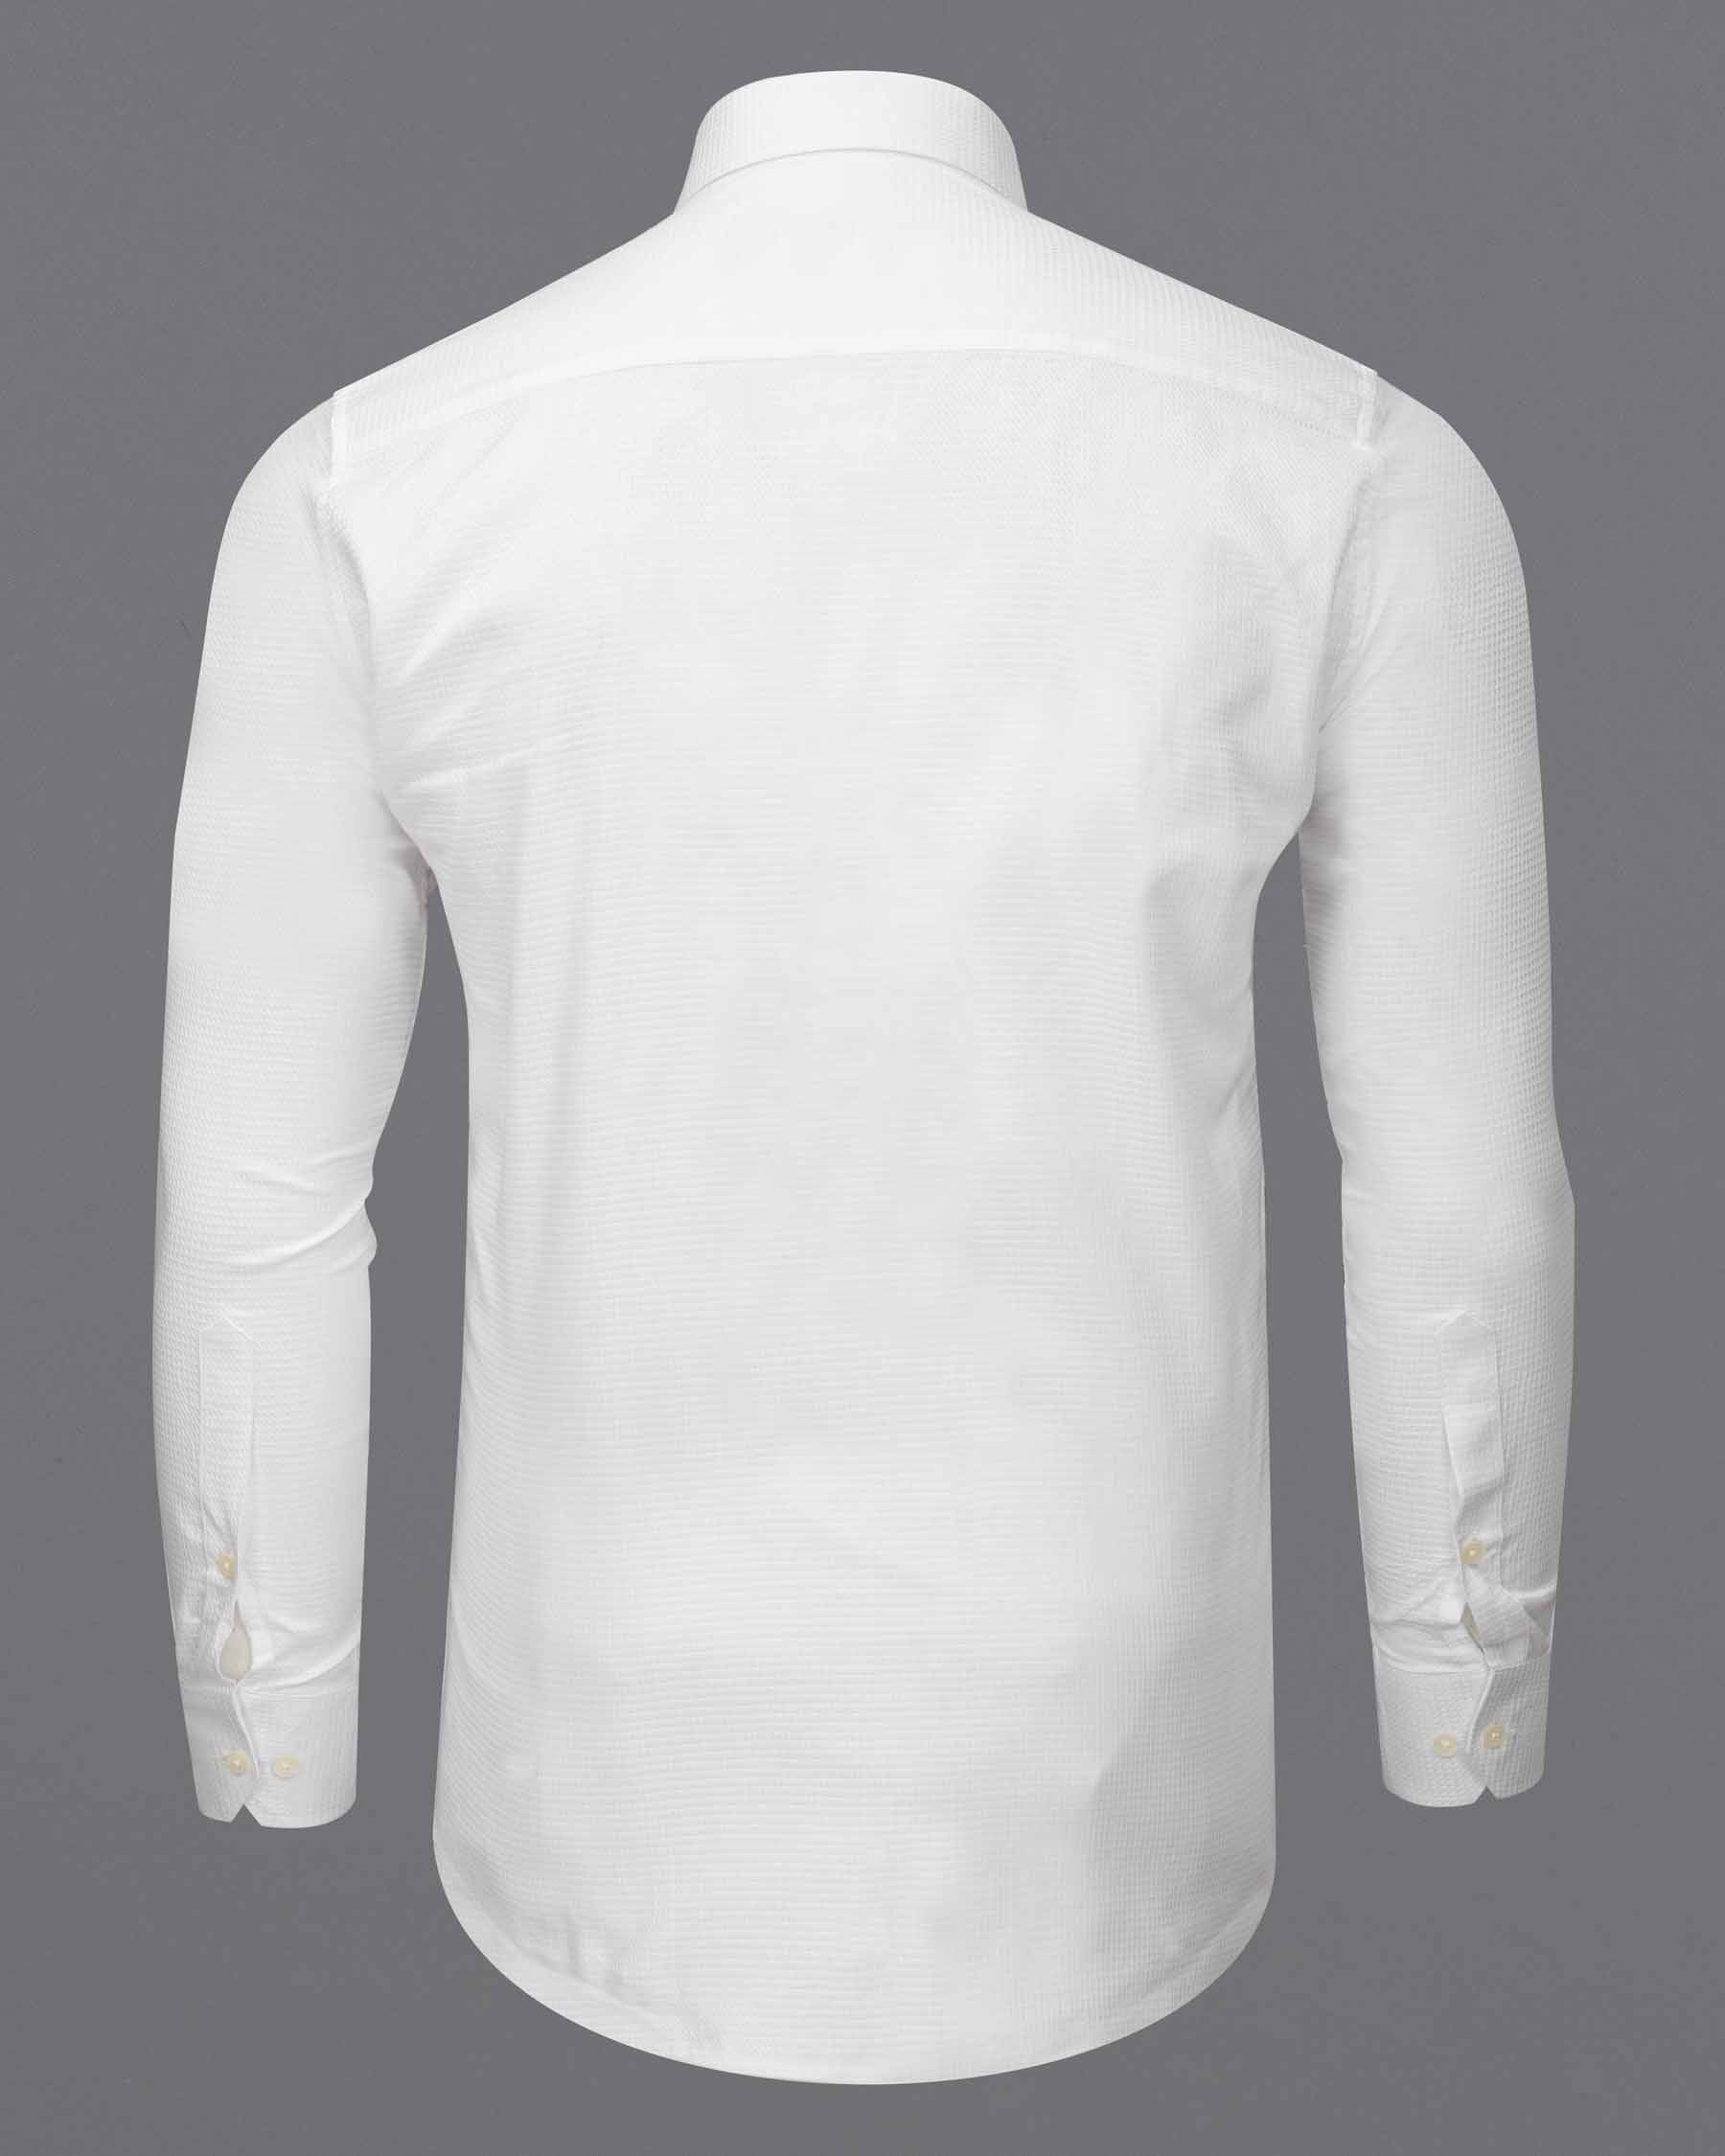 Bright White Dobby Textured Premium Giza Cotton Shirt 6114-CA-38, 6114-CA-H-38, 6114-CA-39, 6114-CA-H-39, 6114-CA-40, 6114-CA-H-40, 6114-CA-42, 6114-CA-H-42, 6114-CA-44, 6114-CA-H-44, 6114-CA-46, 6114-CA-H-46, 6114-CA-48, 6114-CA-H-48, 6114-CA-50, 6114-CA-H-50, 6114-CA-52, 6114-CA-H-52